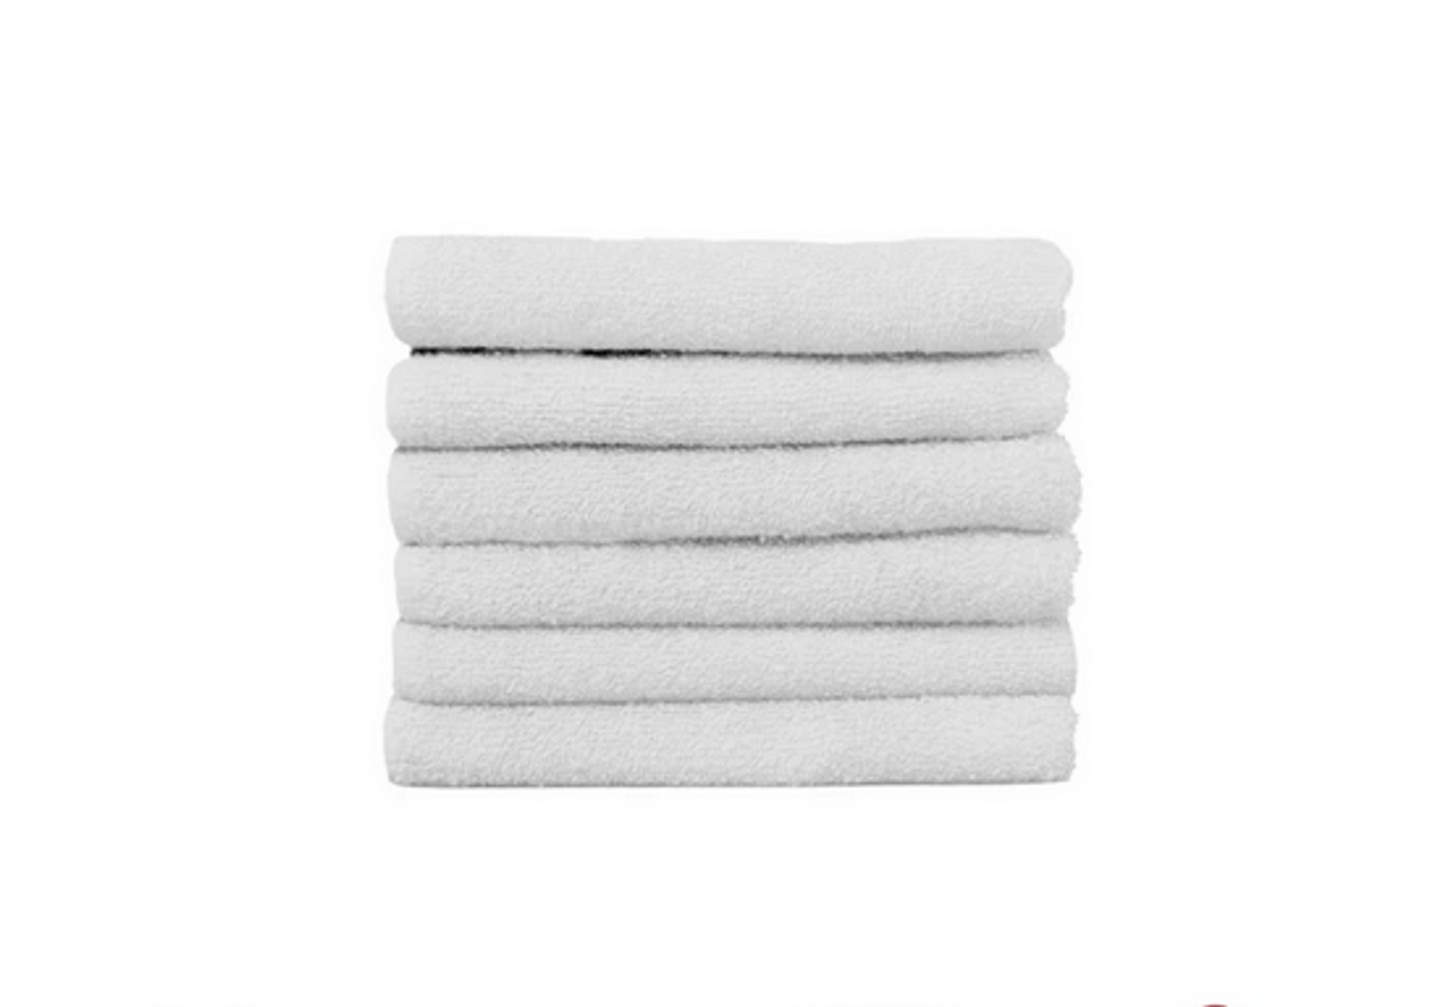 Partex Edge Bleach Guard Towels - White - Large - 12pk.